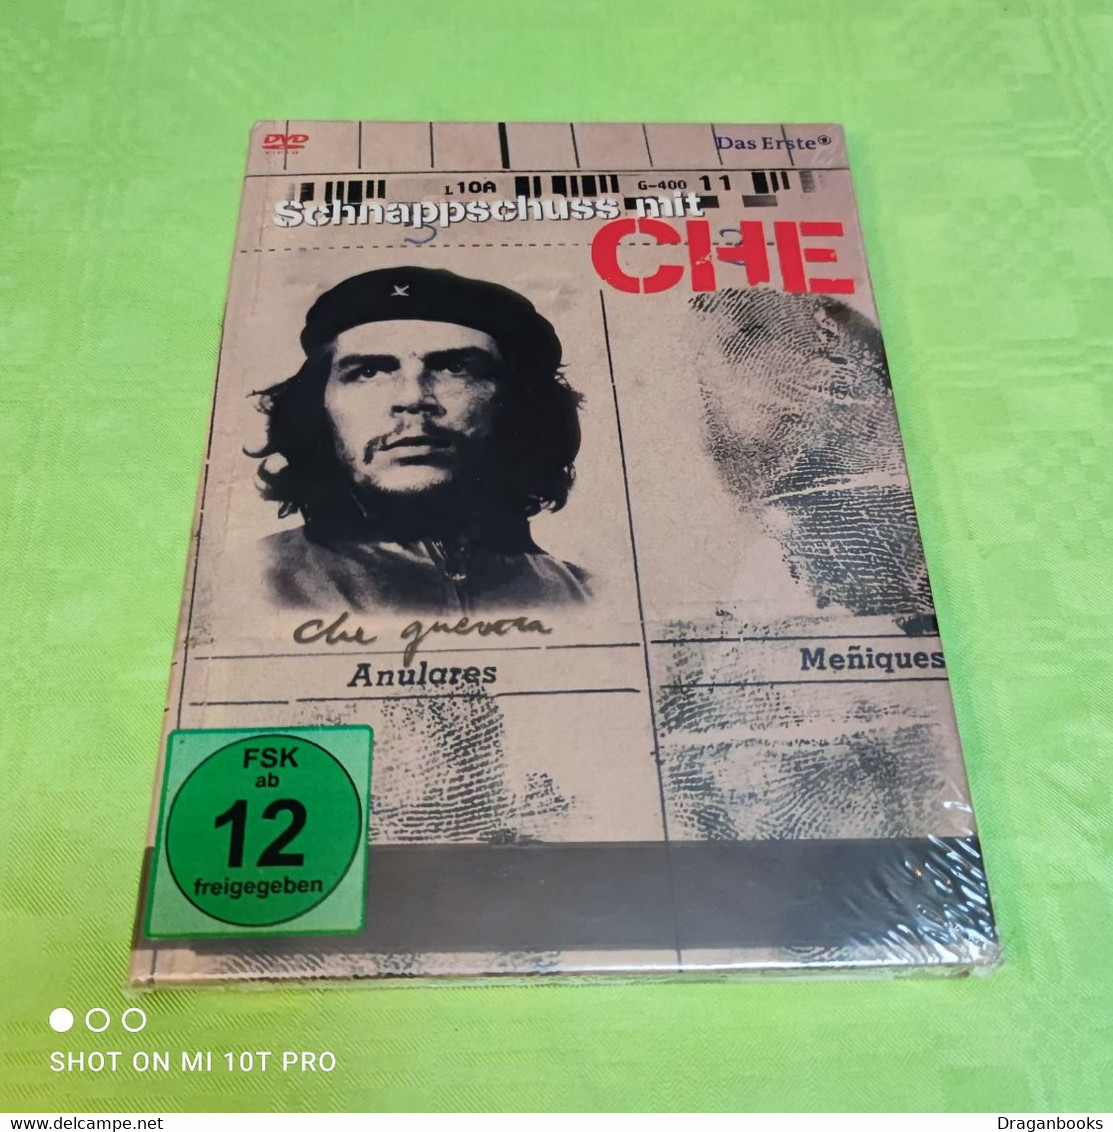 Schnappschuss Mit CHE - Documentary